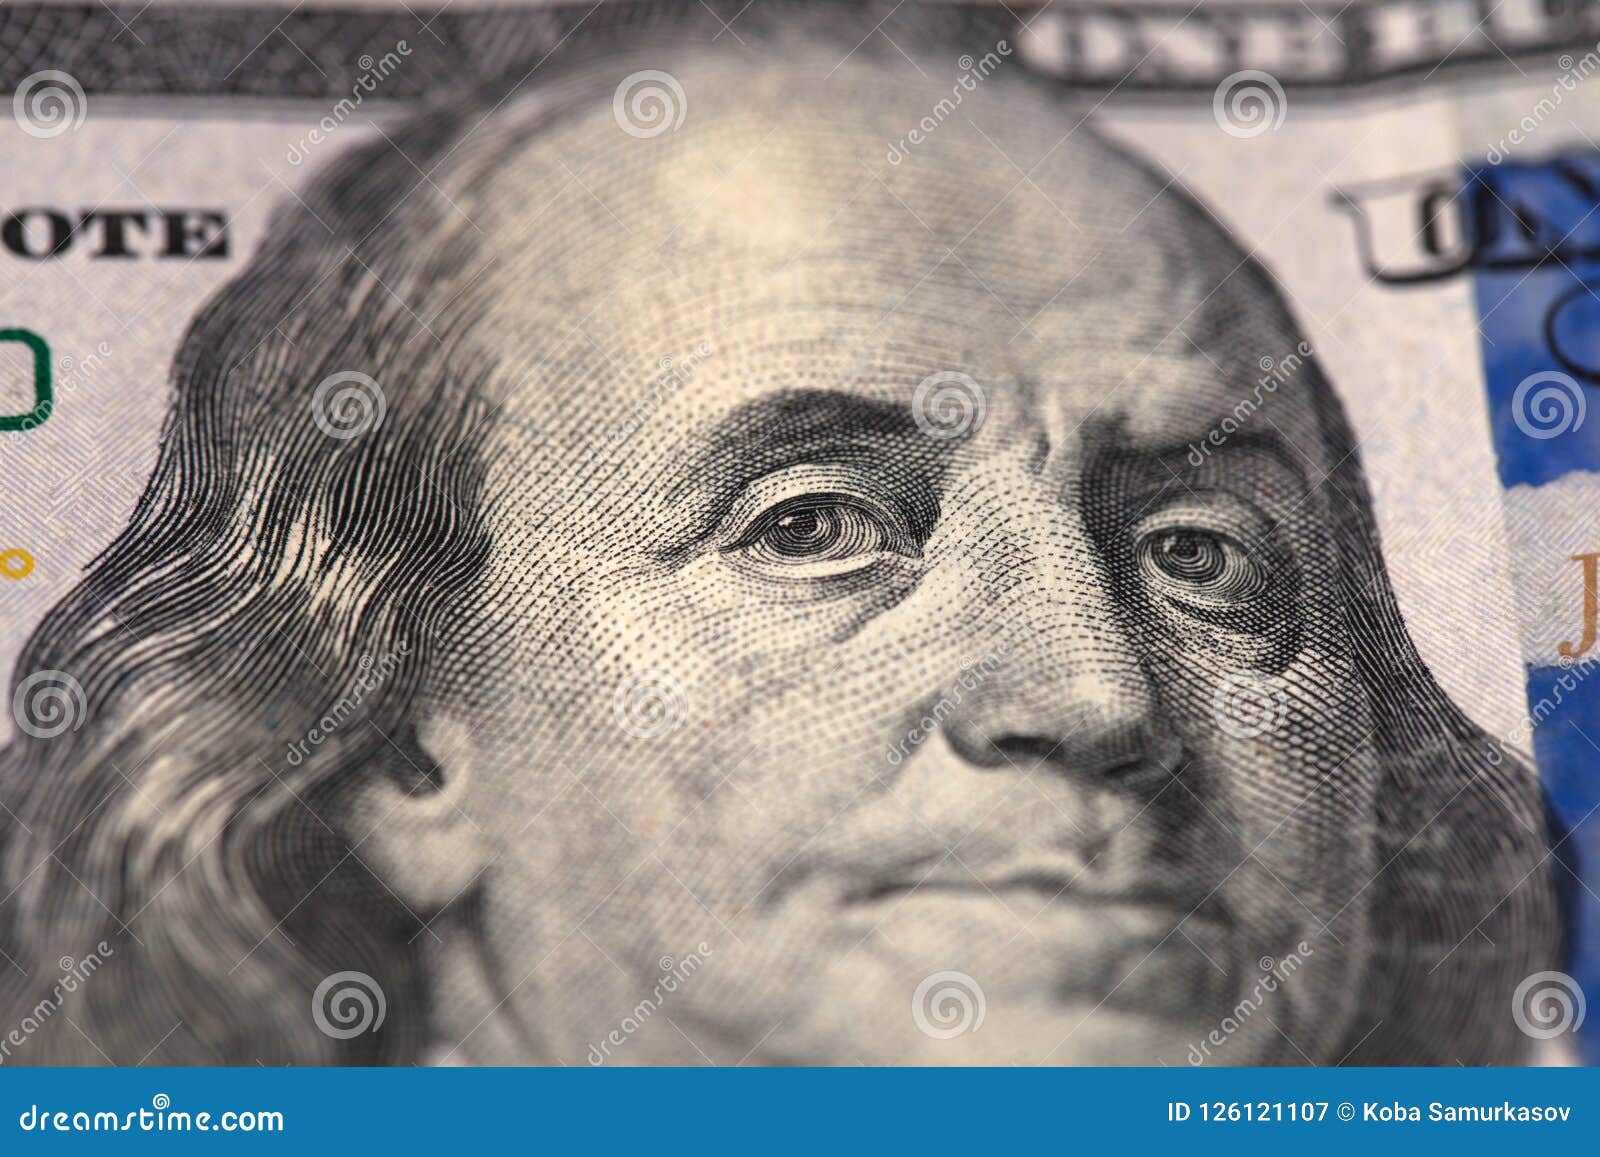 Франклин на какой купюре. Бенджамин Франклин на 100 долларах. Портрет Франклина. Бенджамин Франклин портрет. Франклин портрет на долларе.